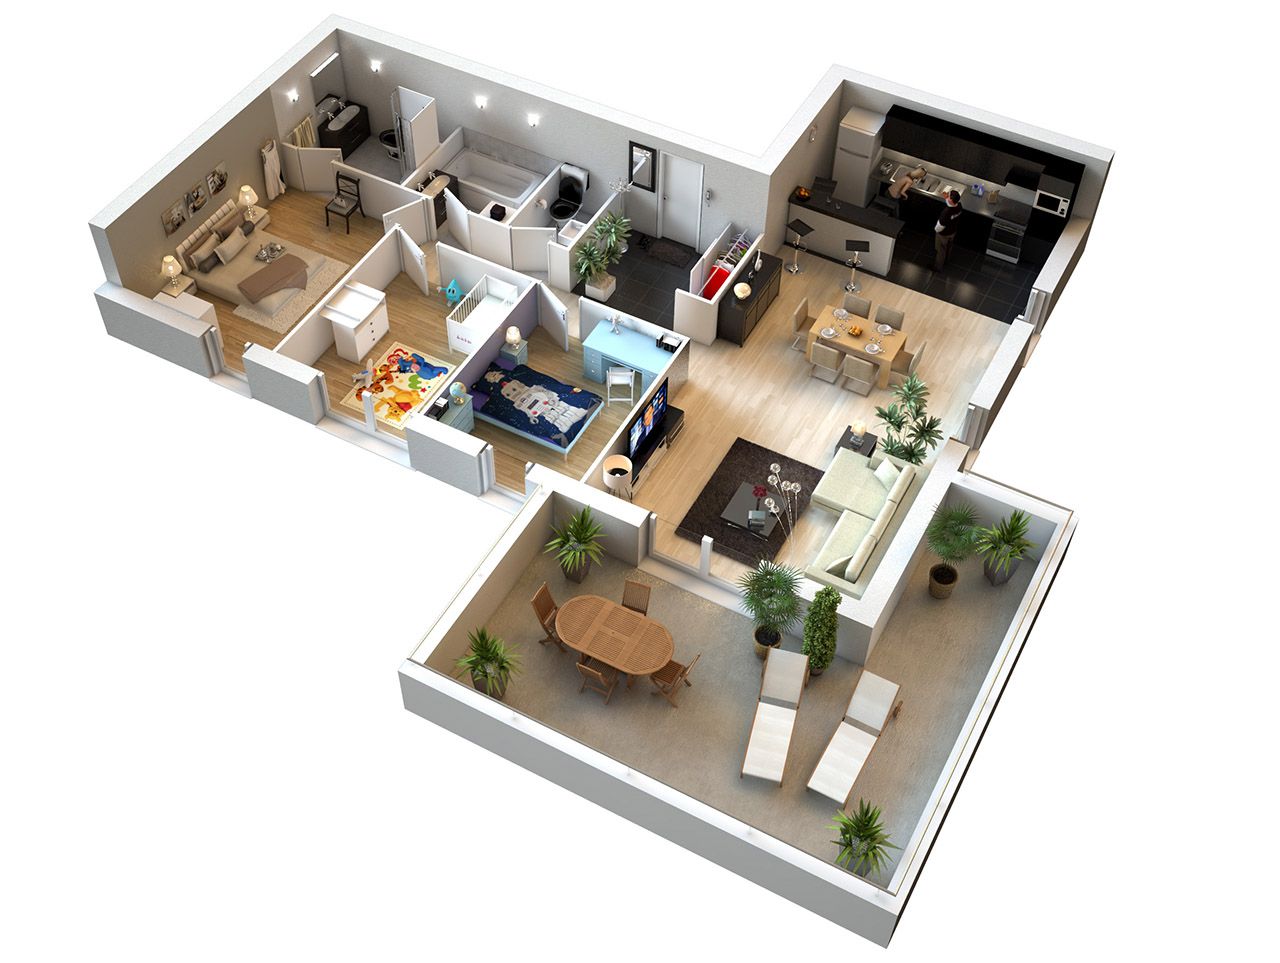  plan  appartement  duplex 3d Infos et ressources